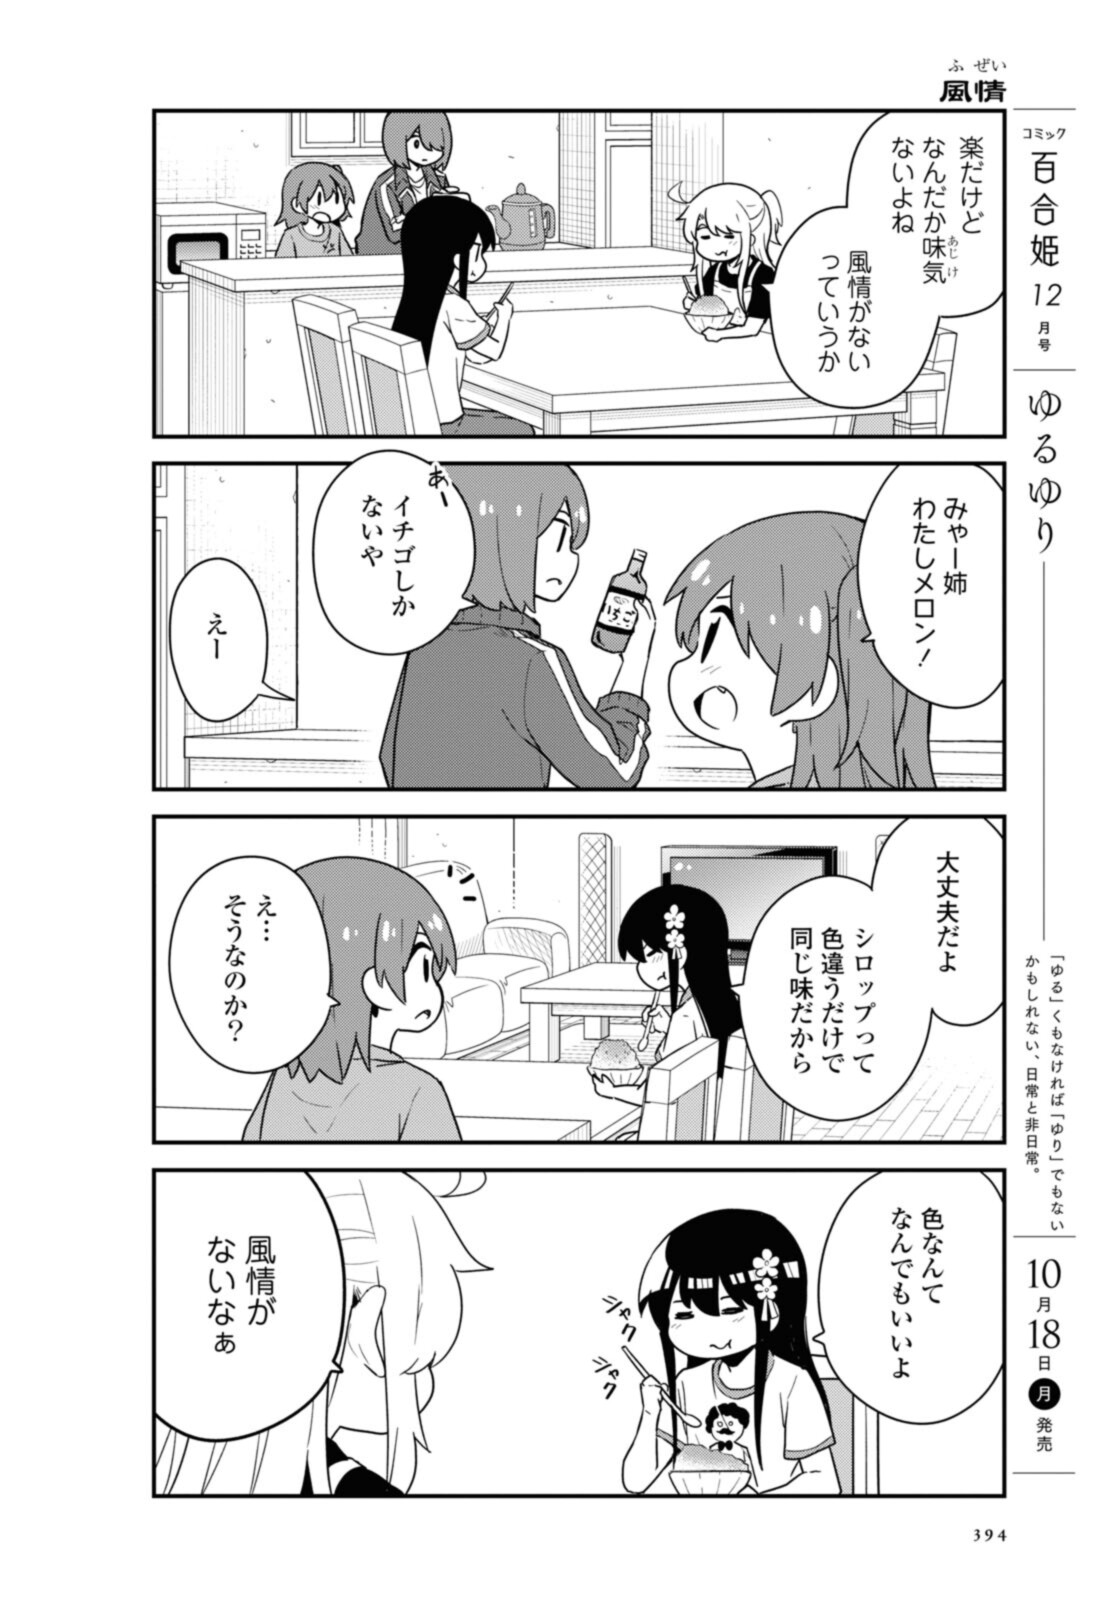 Watashi ni Tenshi ga Maiorita! - Chapter 88 - Page 7